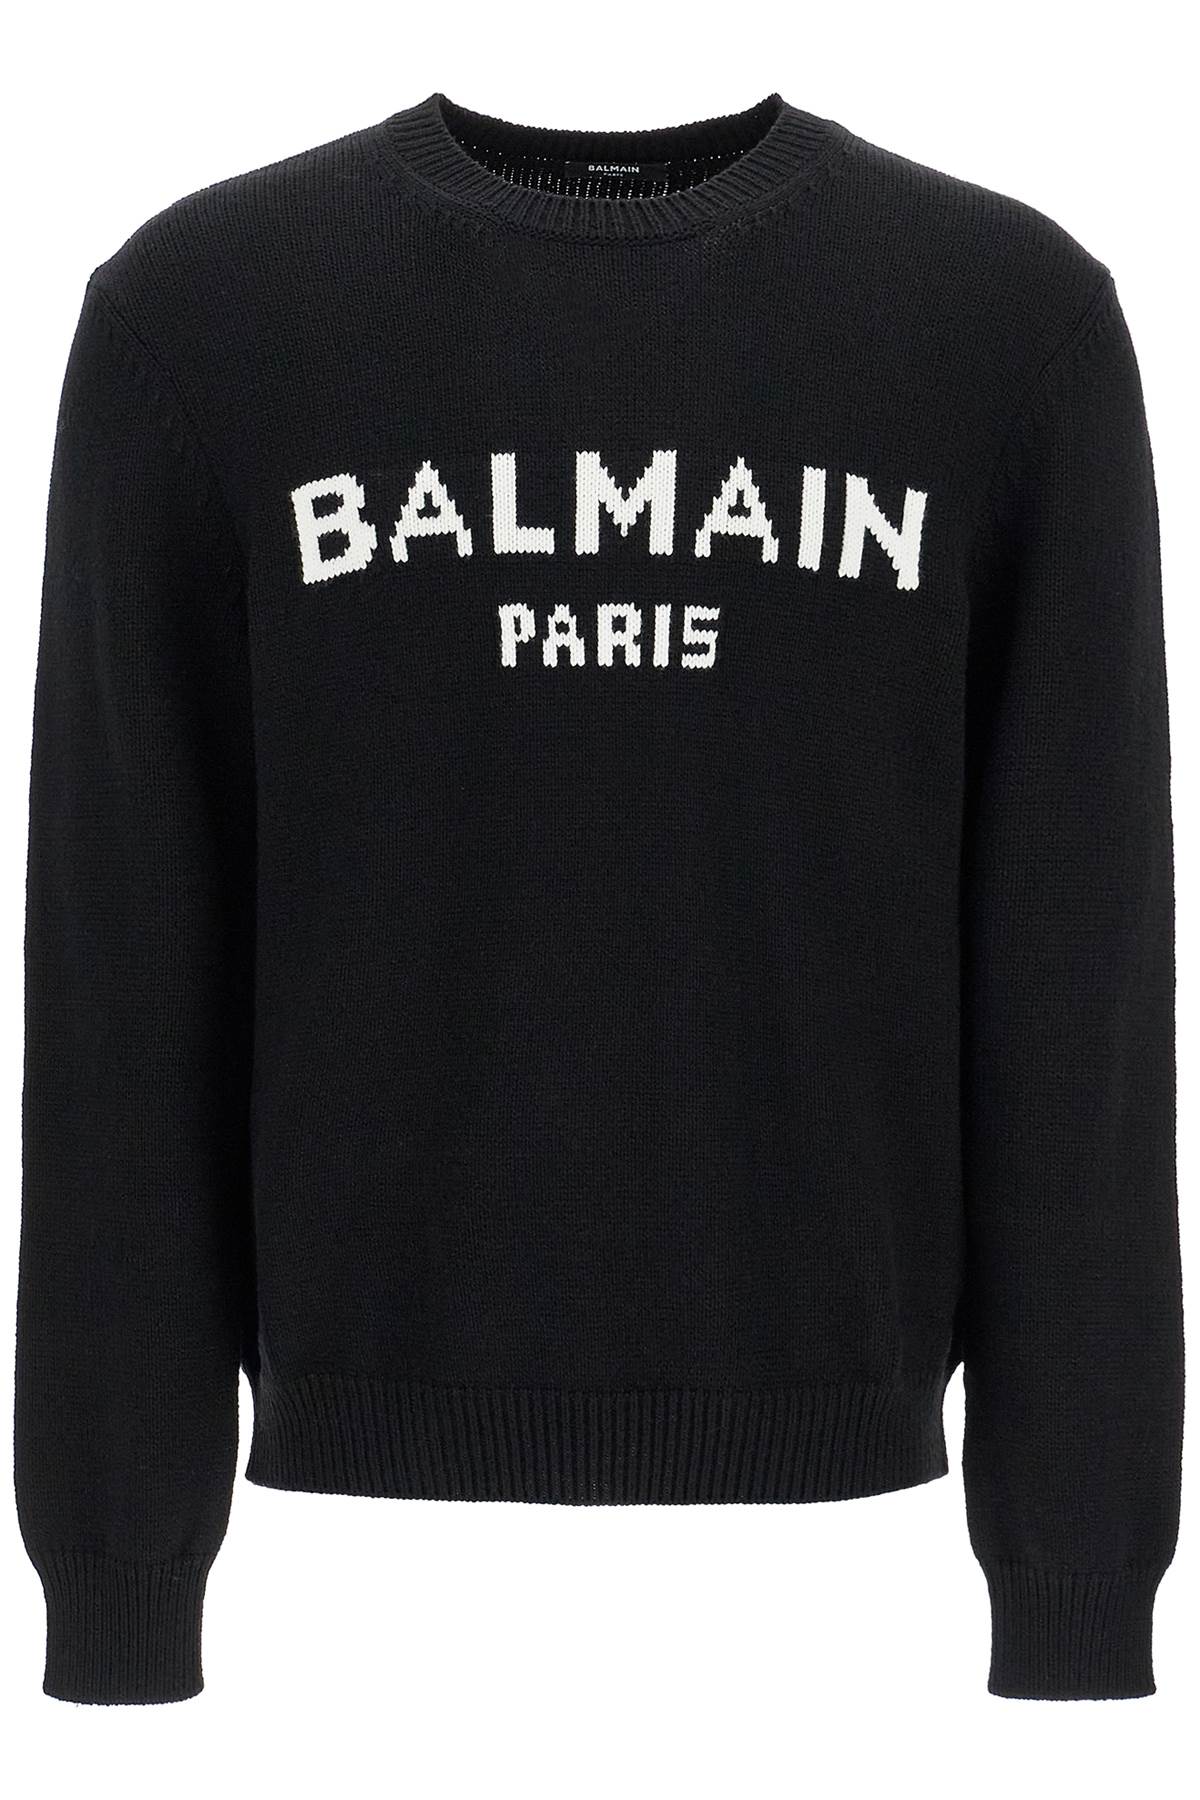 Balmain BALMAIN oversized branded sweater